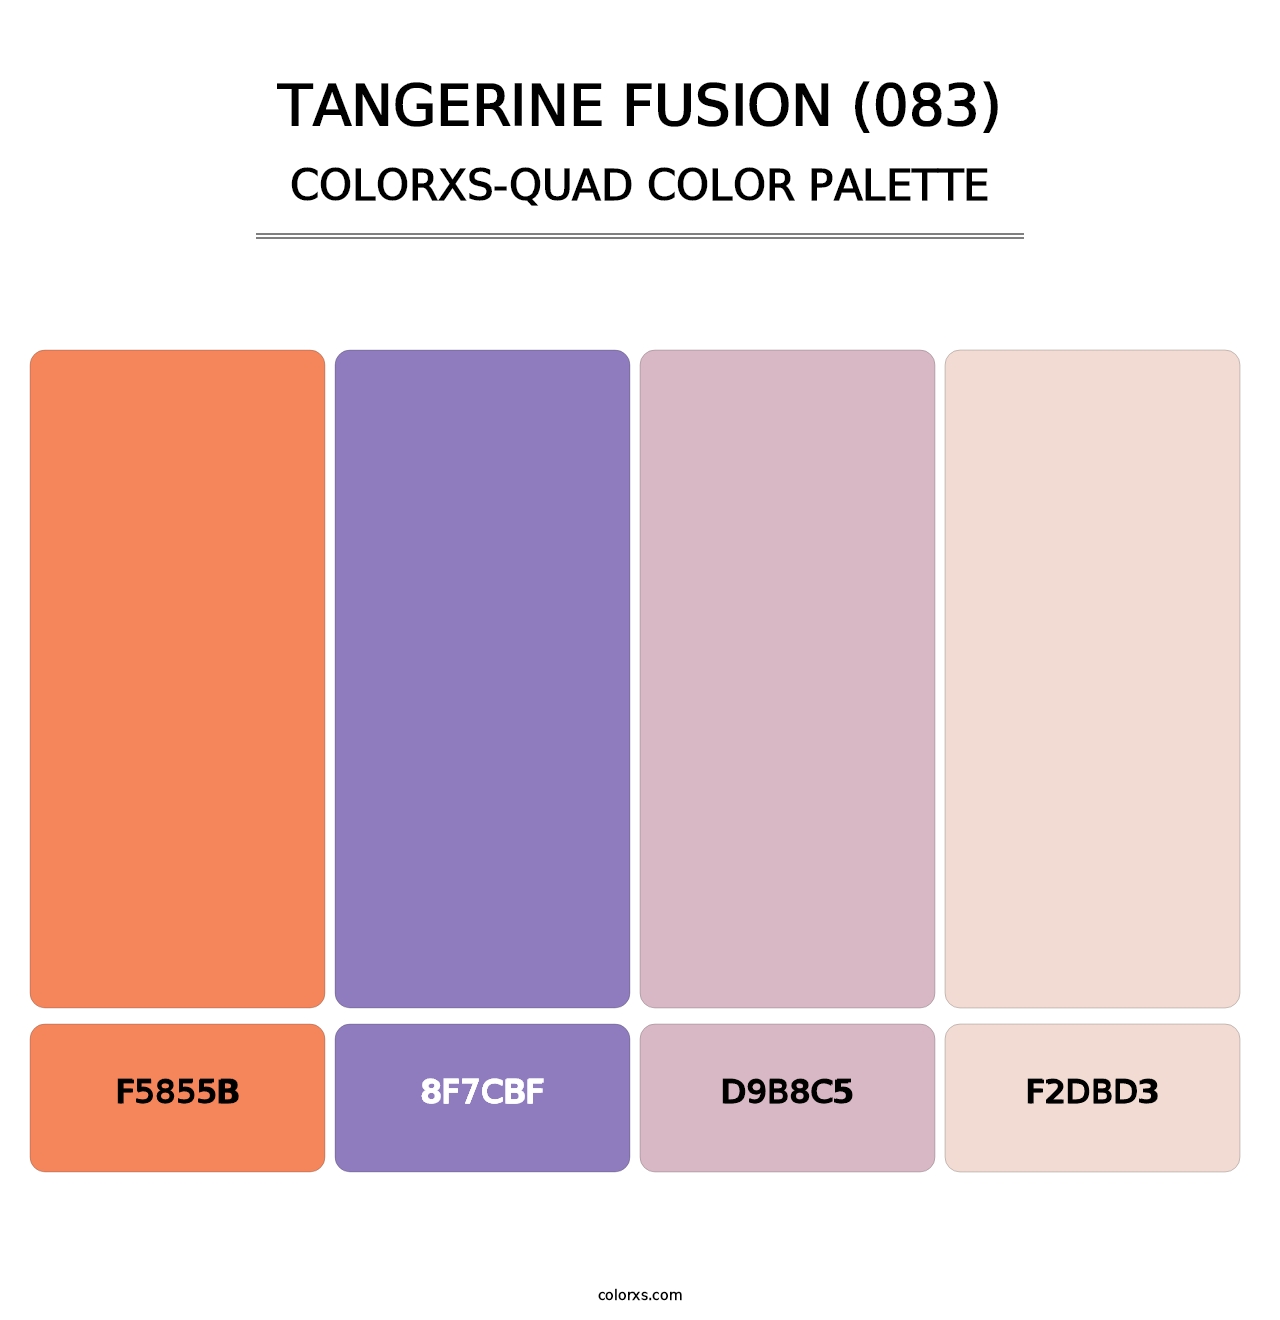 Tangerine Fusion (083) - Colorxs Quad Palette